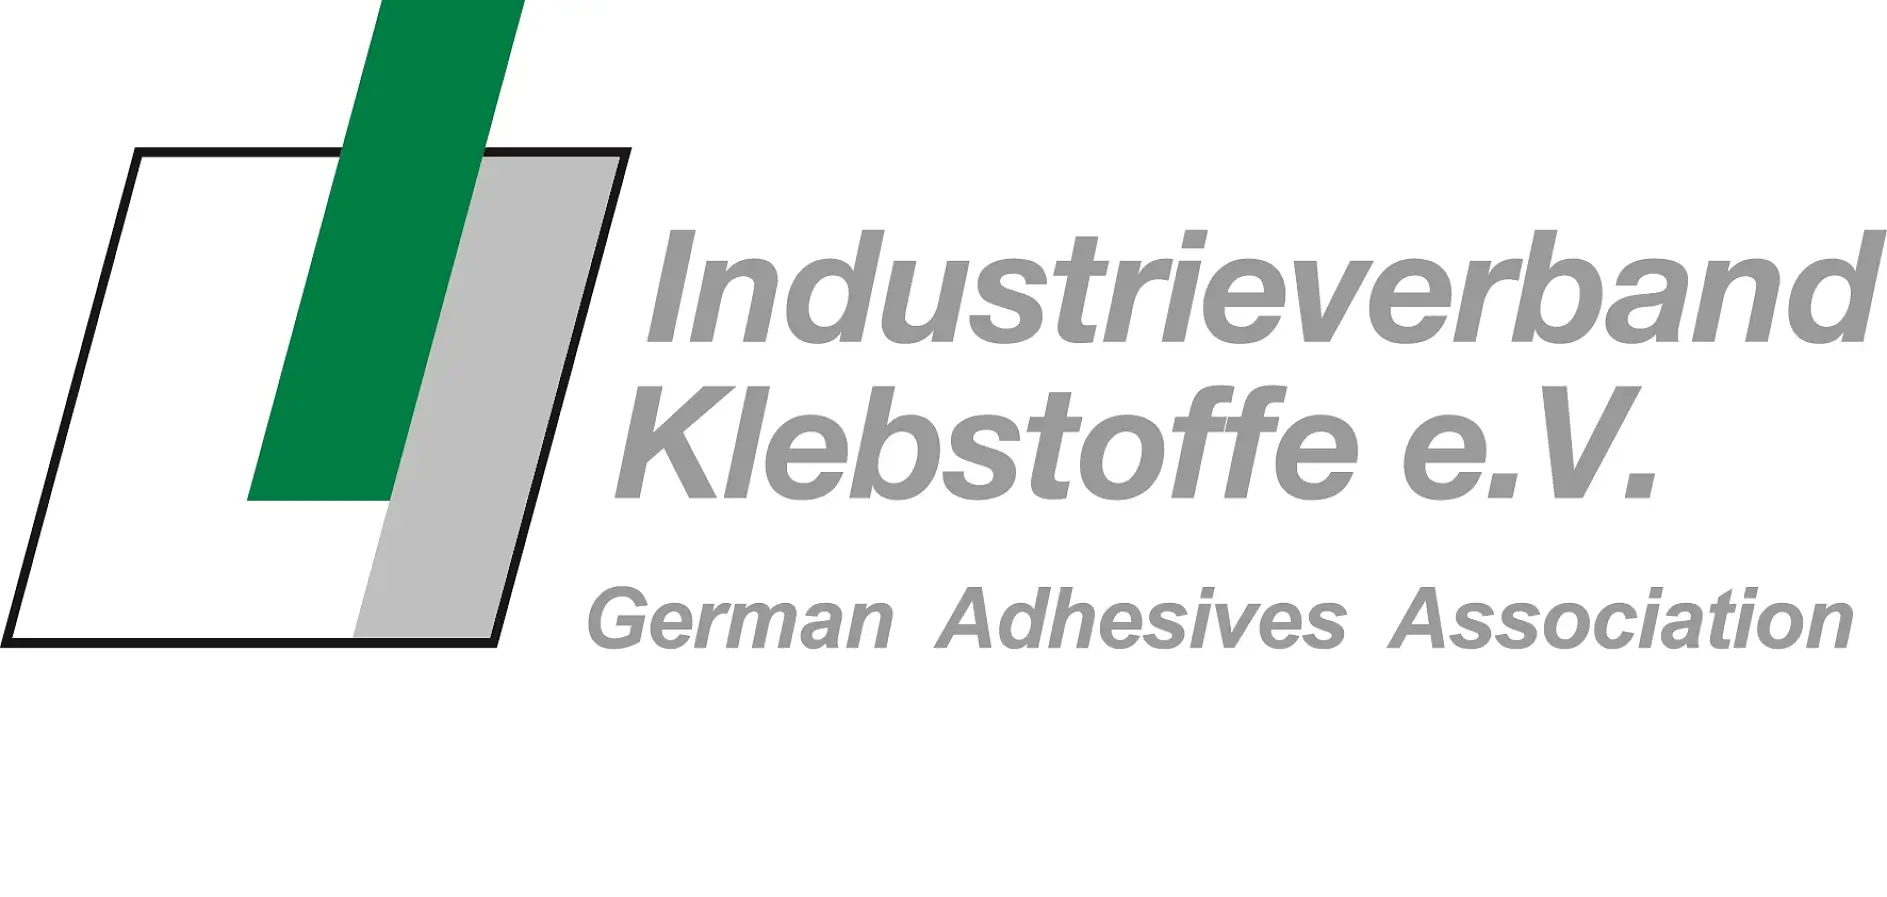 德国粘合剂协会拥有广泛的服务组合，是在粘合剂粘接技术领域世界最大的国家组织。